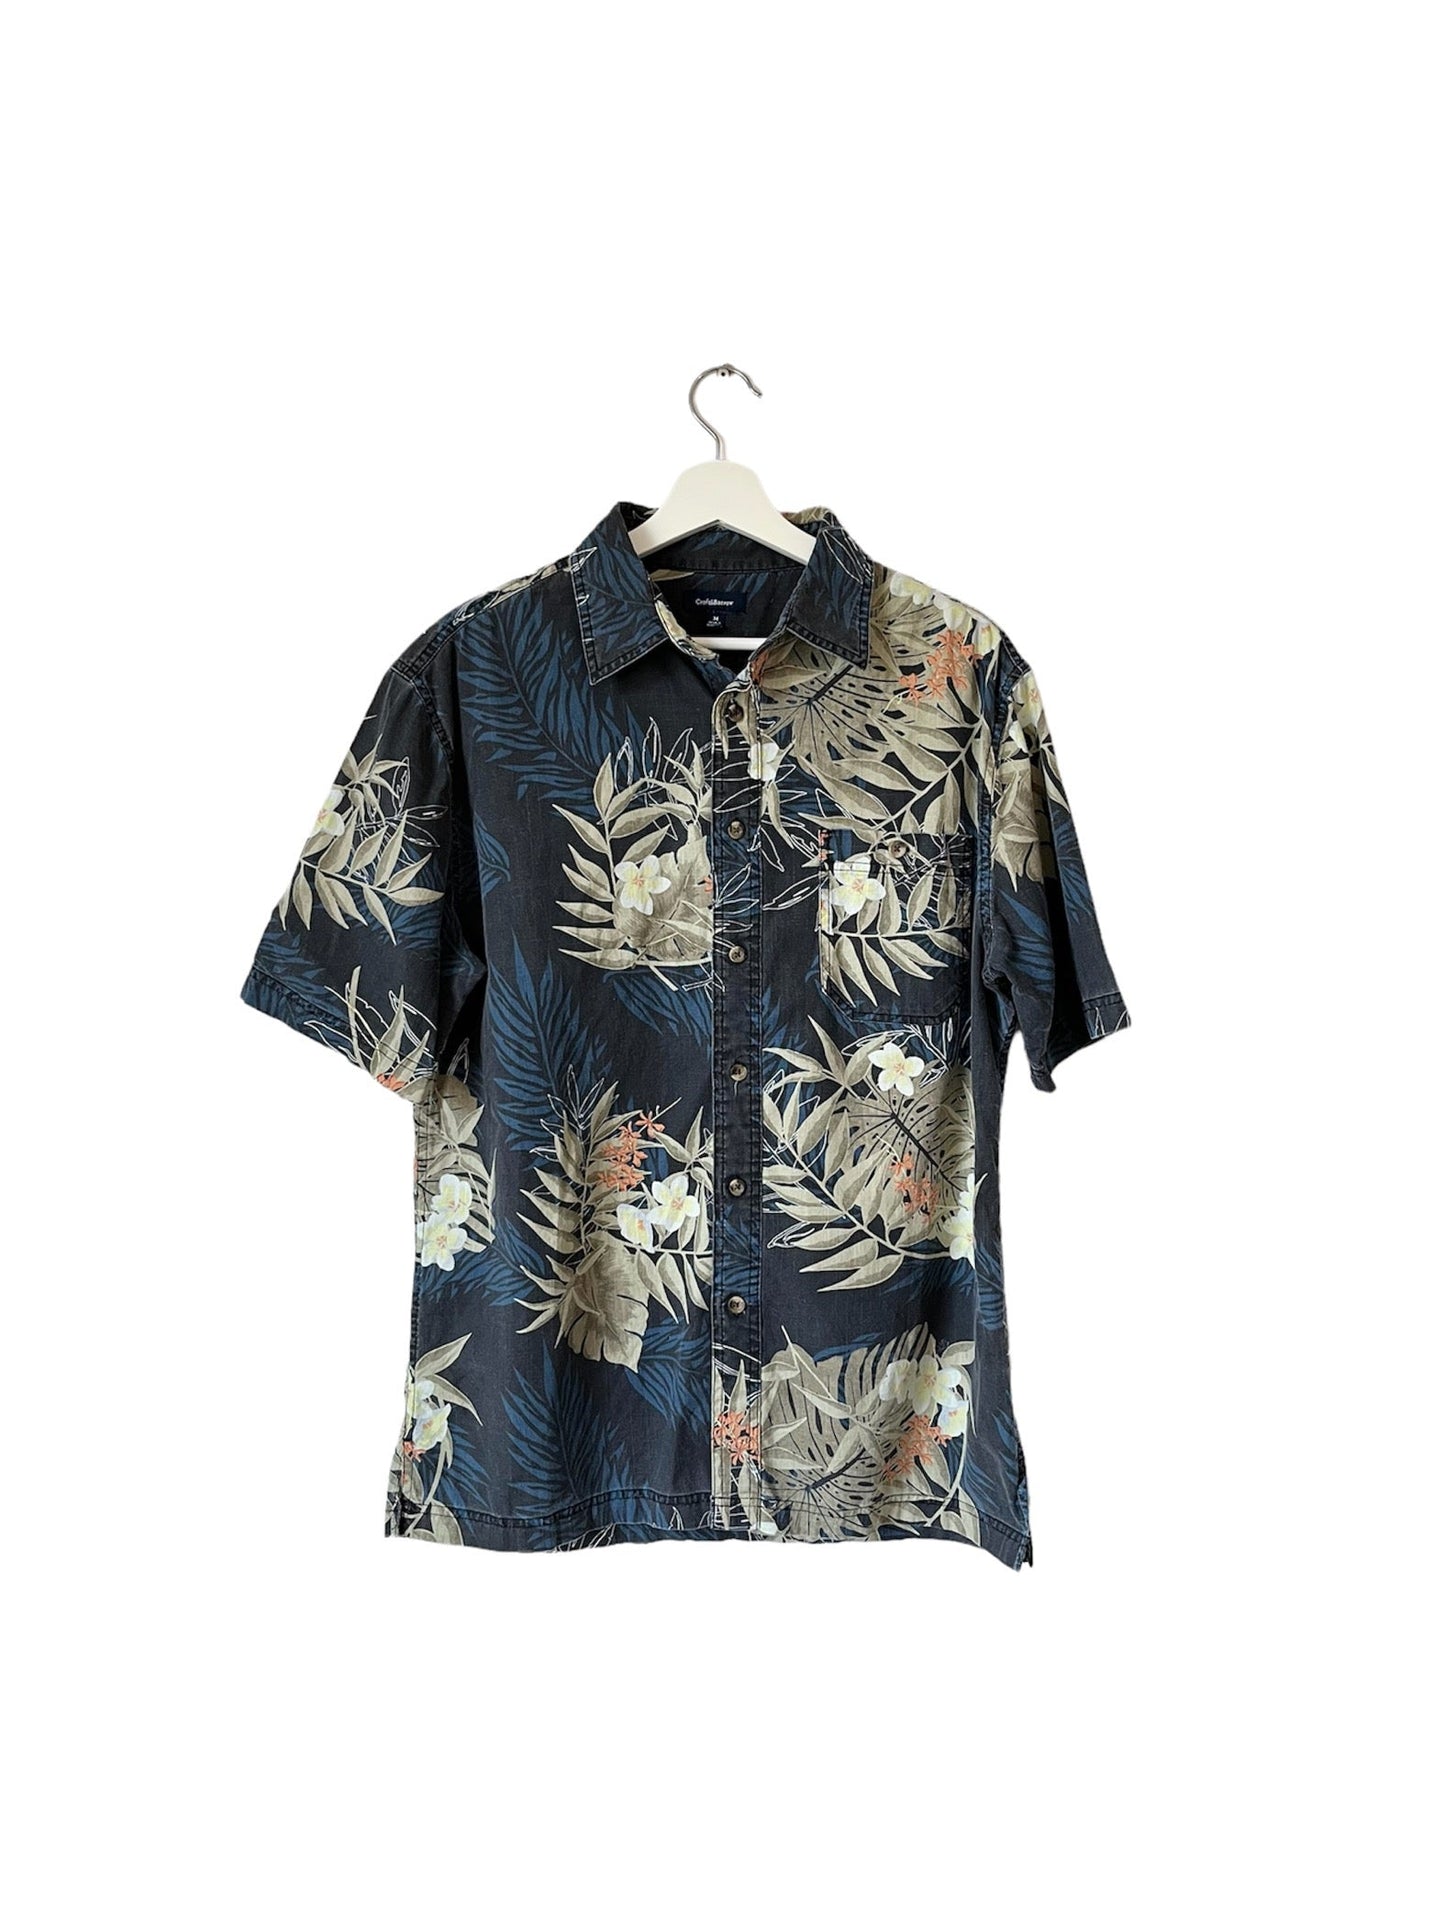 Vintage Hawaiian Shirt - Medium